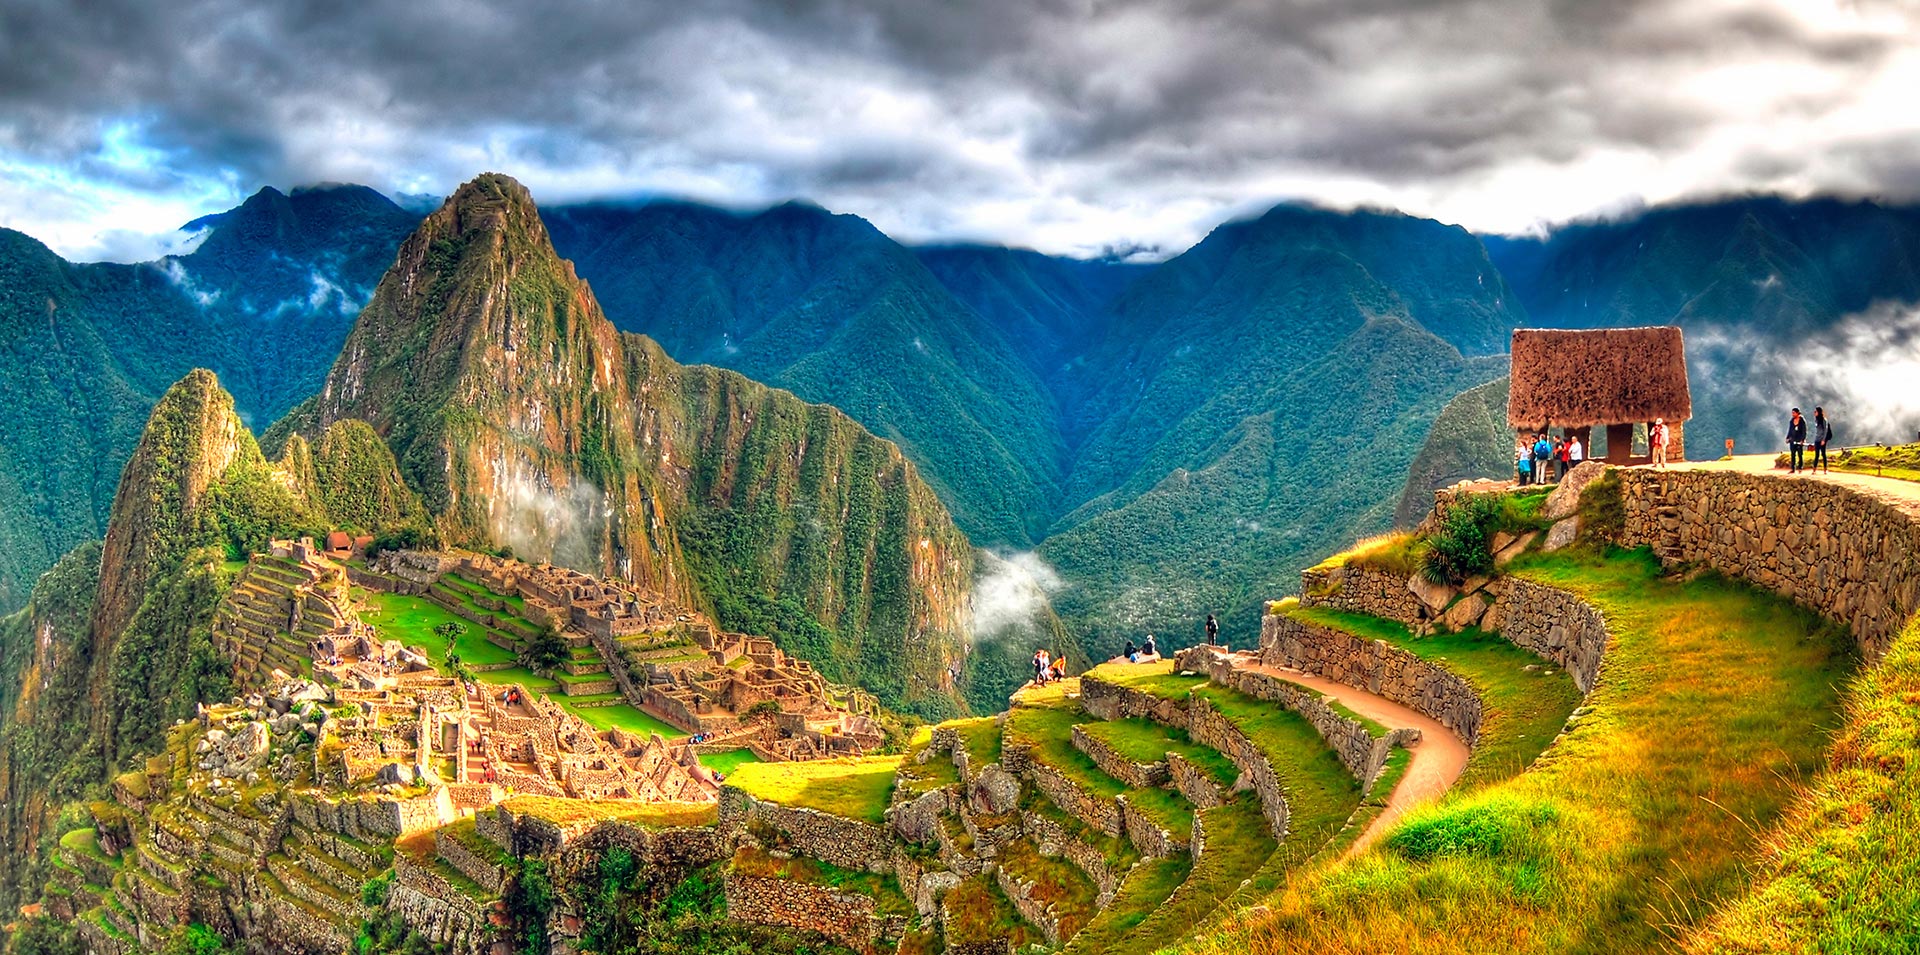 Machu Picchu citadel in Peru seen from the distance